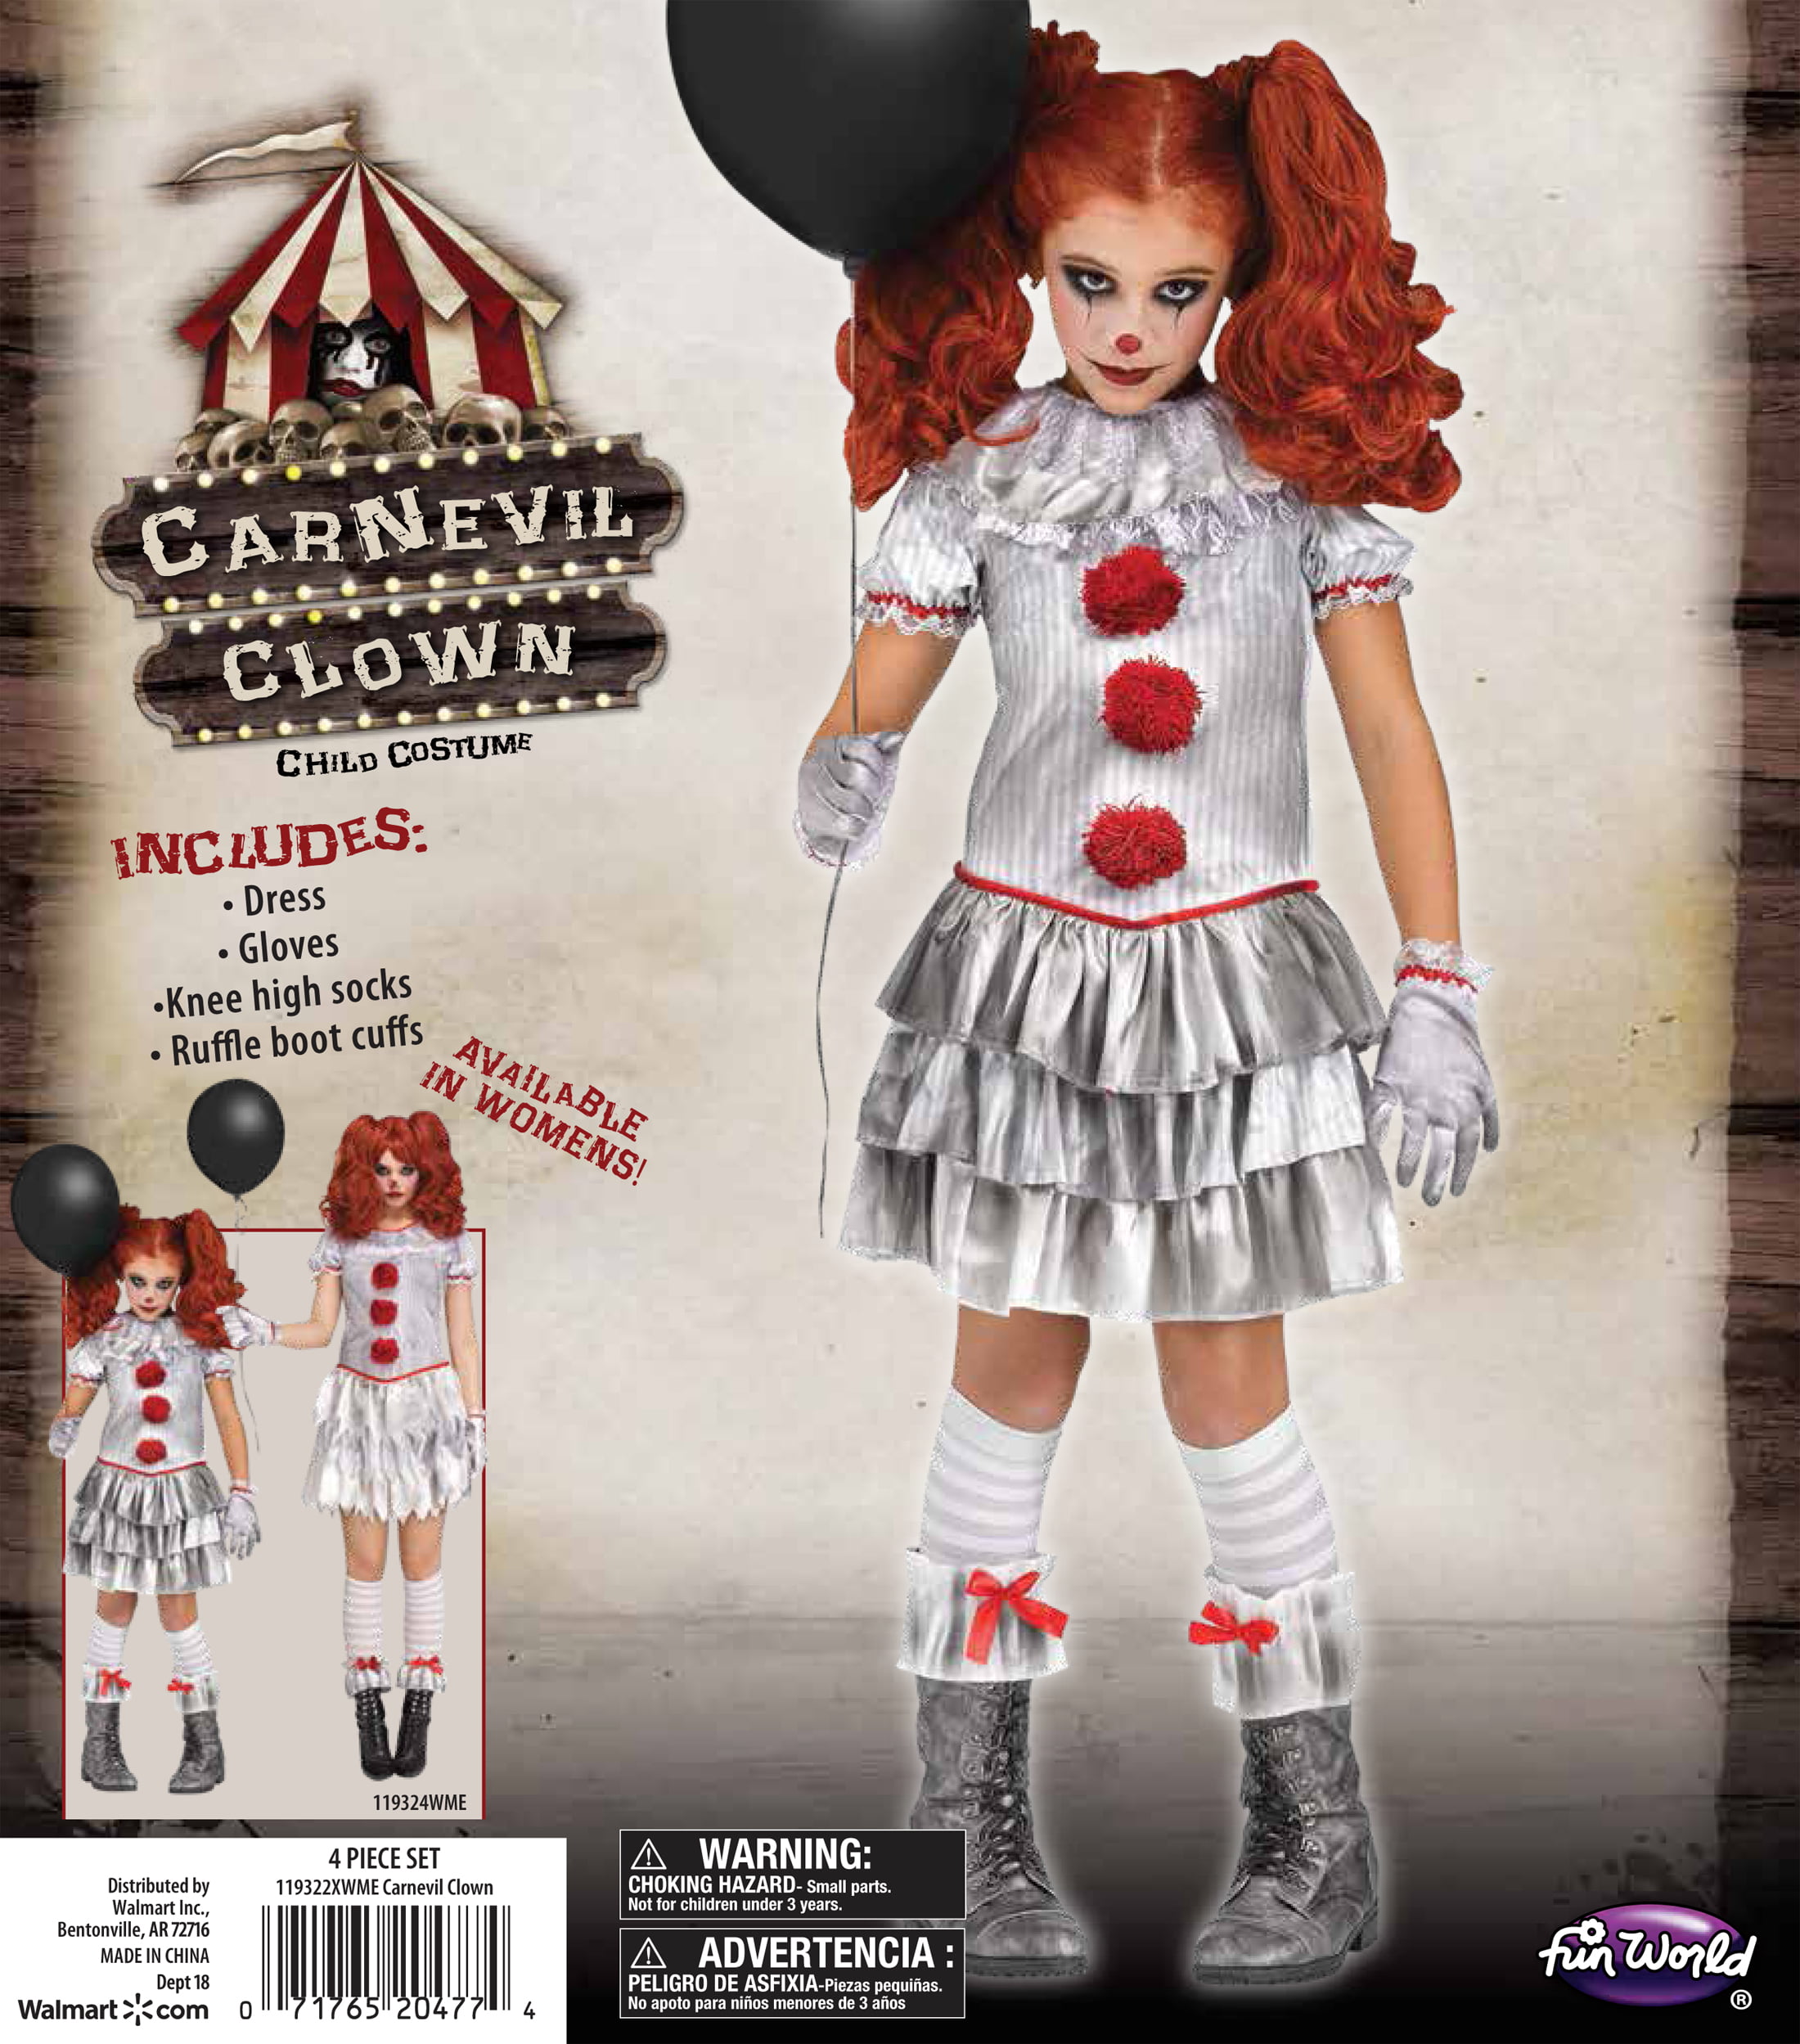 Carnevil Clown Costume for Girls 